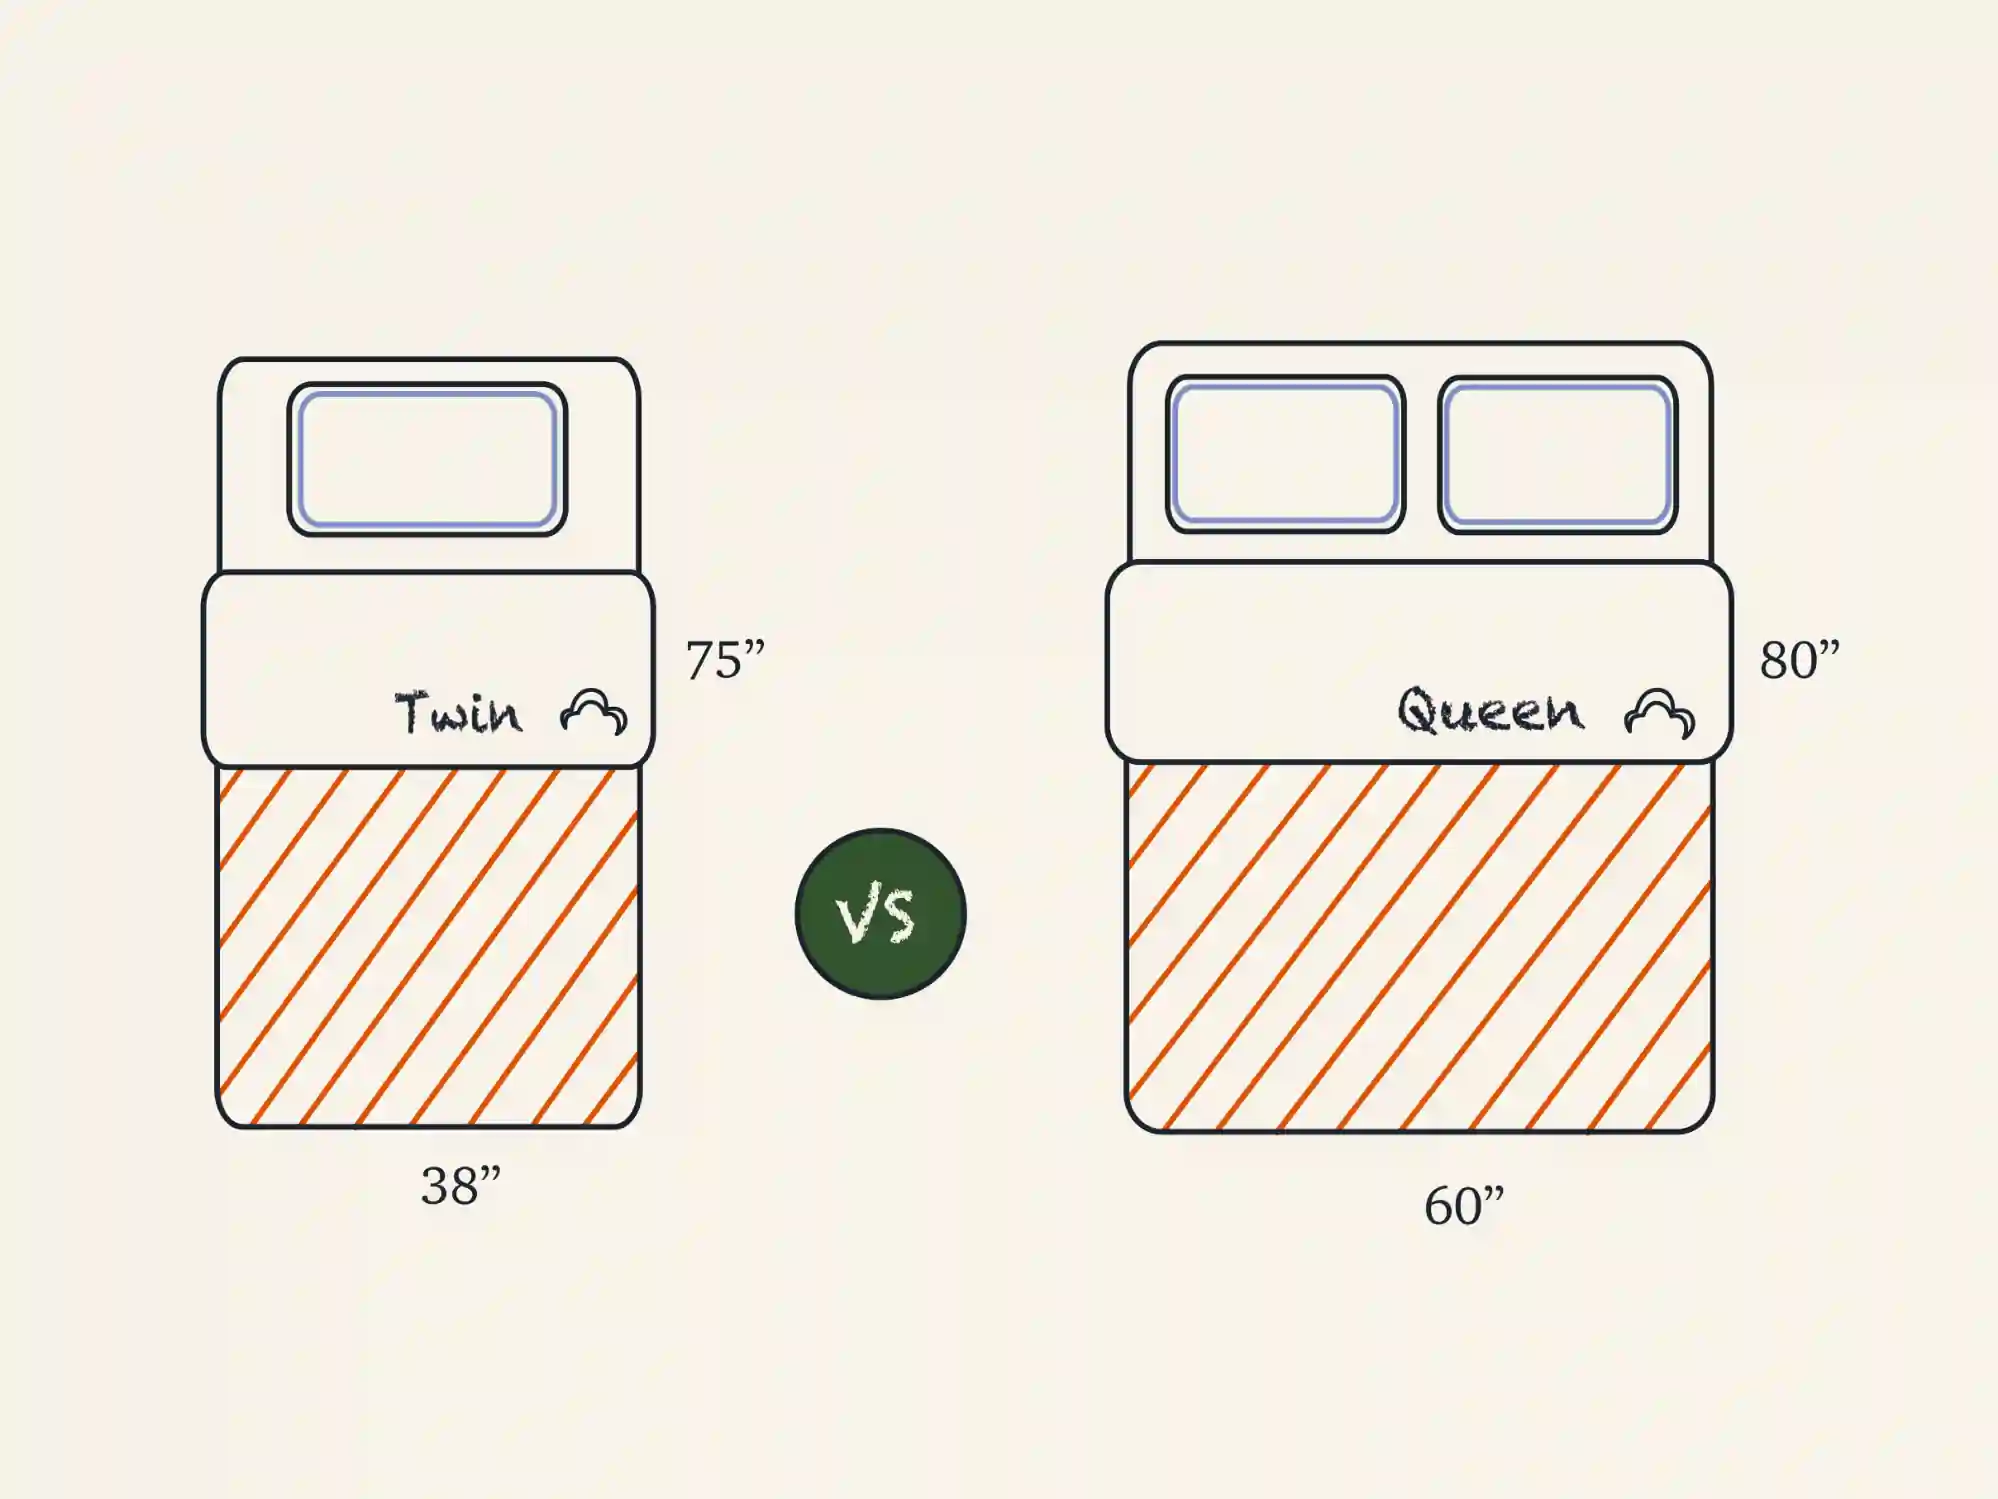 foll size vs queen size mattress